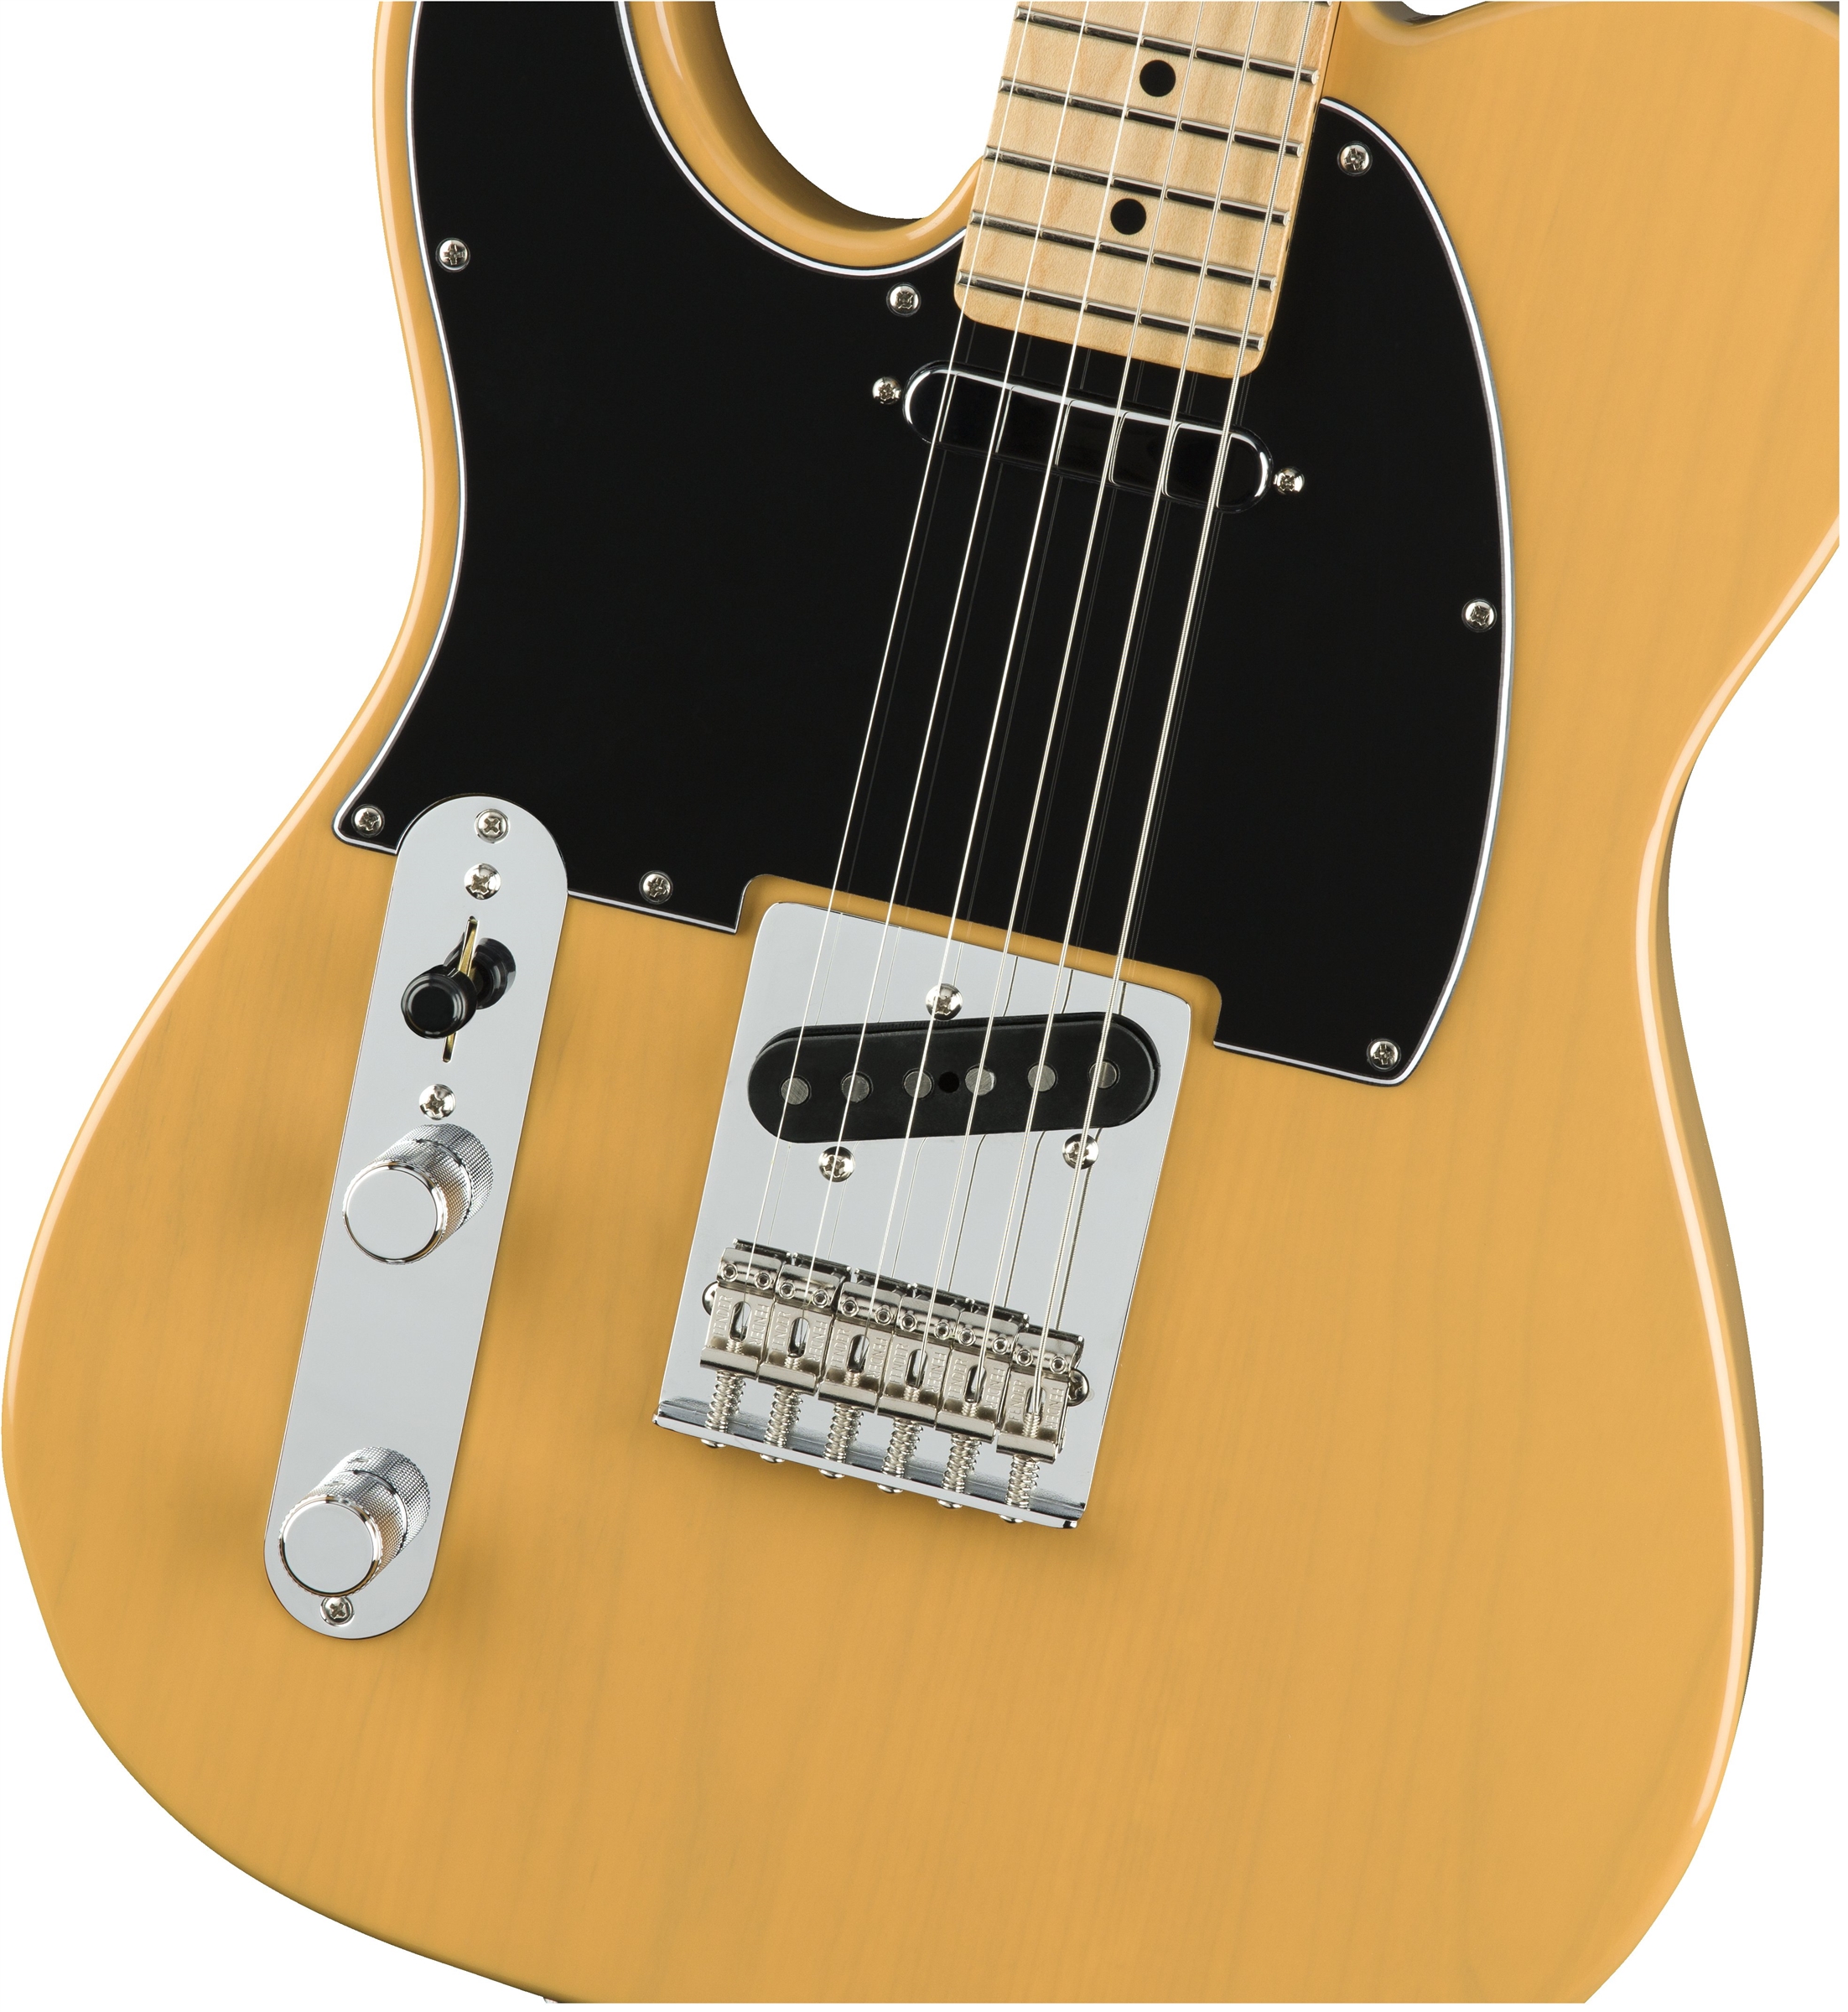 Fender Tele Player Lh Gaucher Mex 2s Mn - Butterscotch Blonde - Linkshandige elektrische gitaar - Variation 2